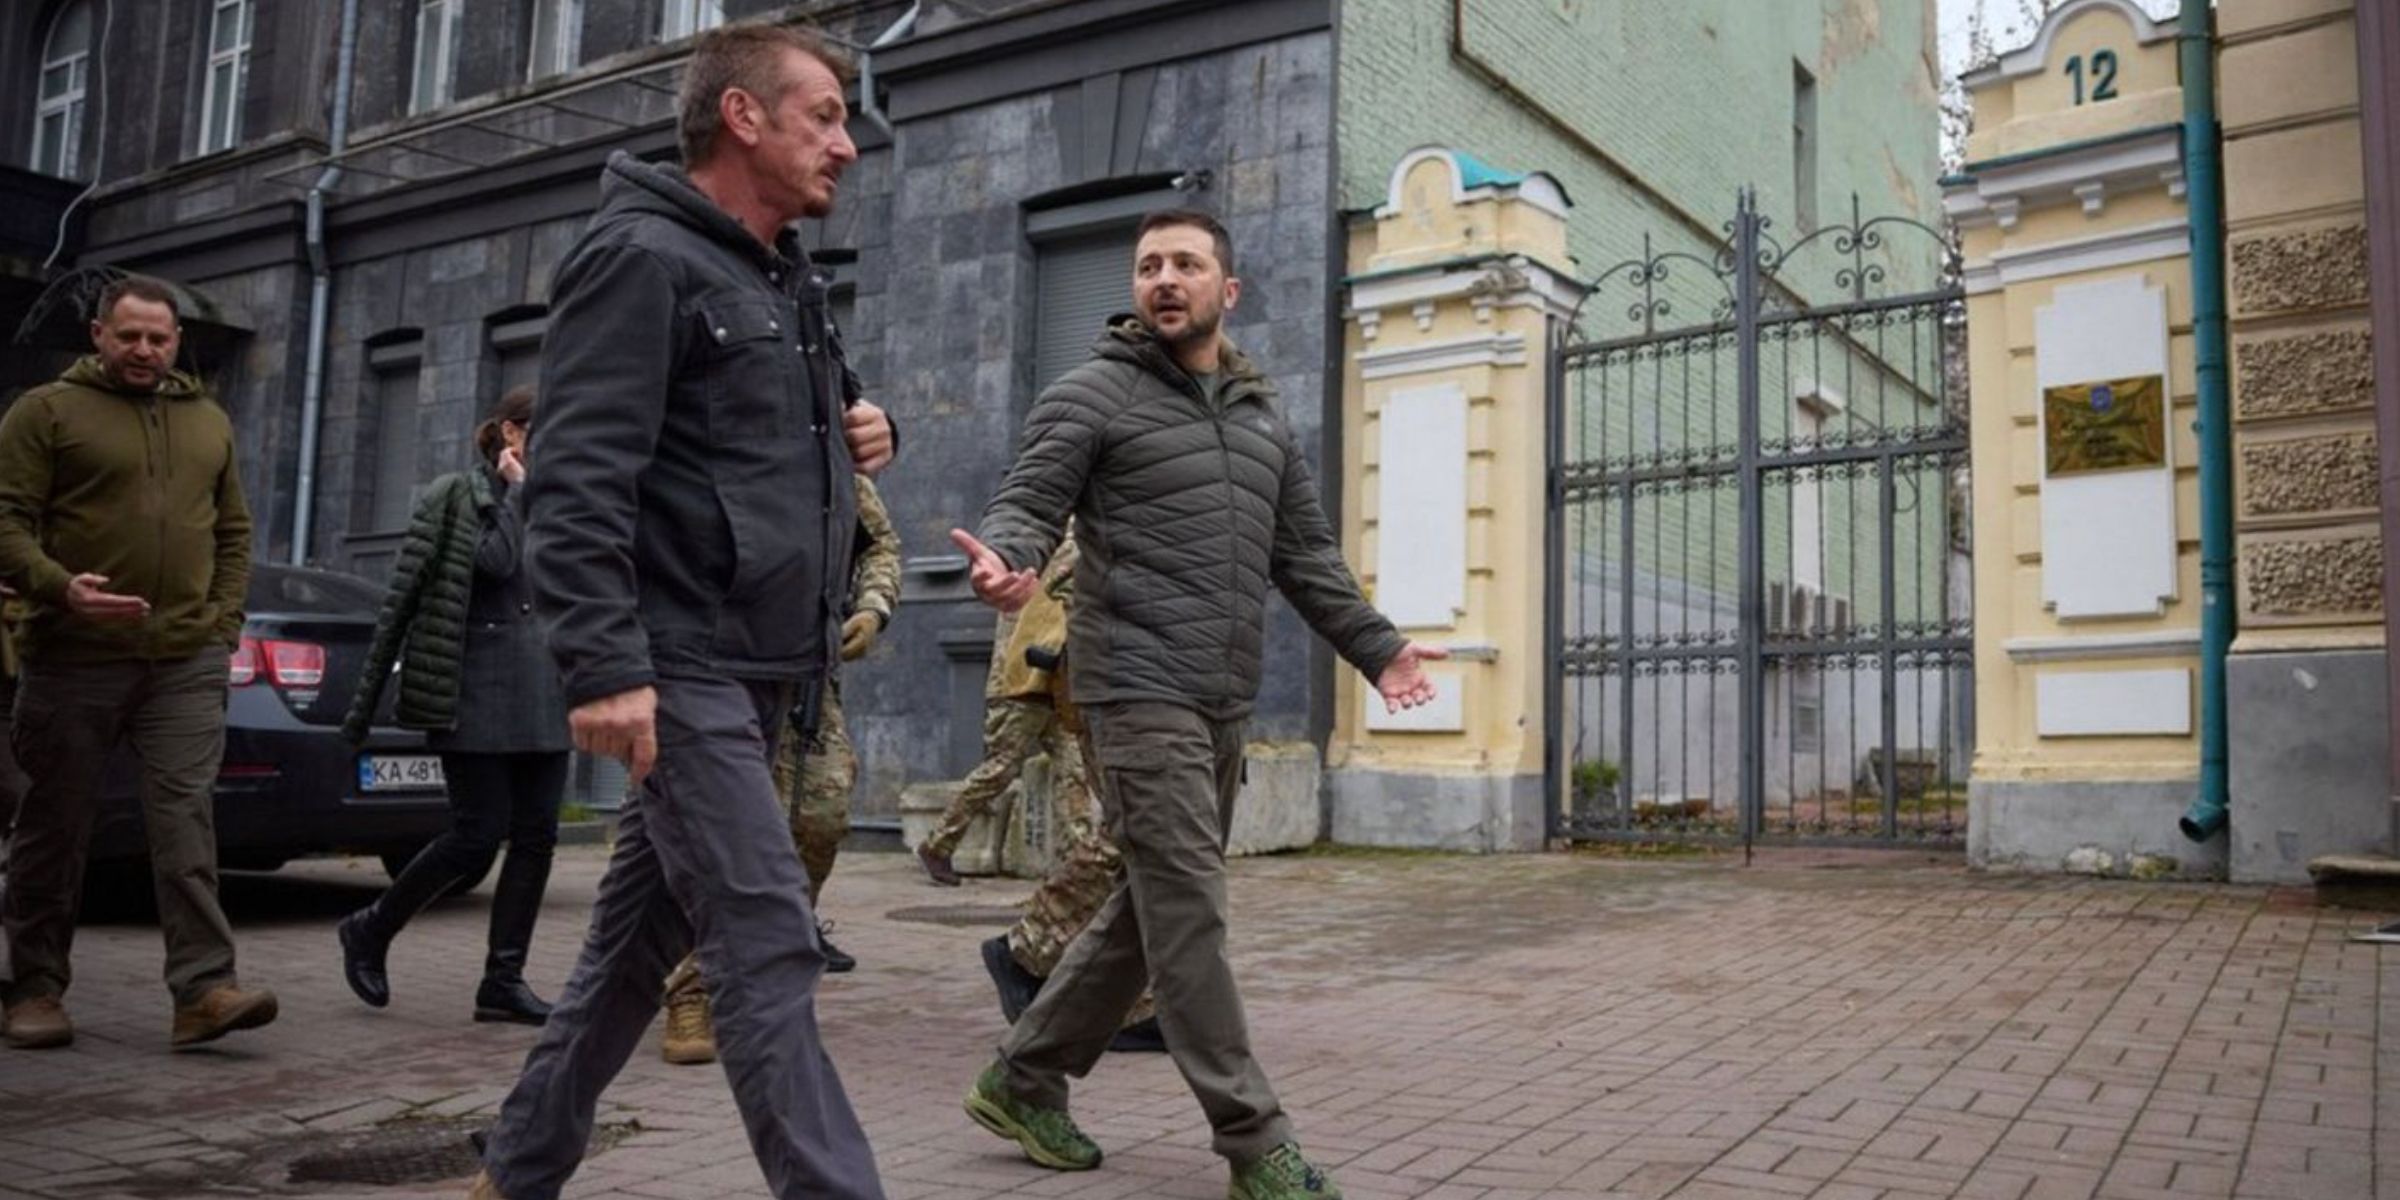 Sean Penn walks with President Zelensky in Ukraine